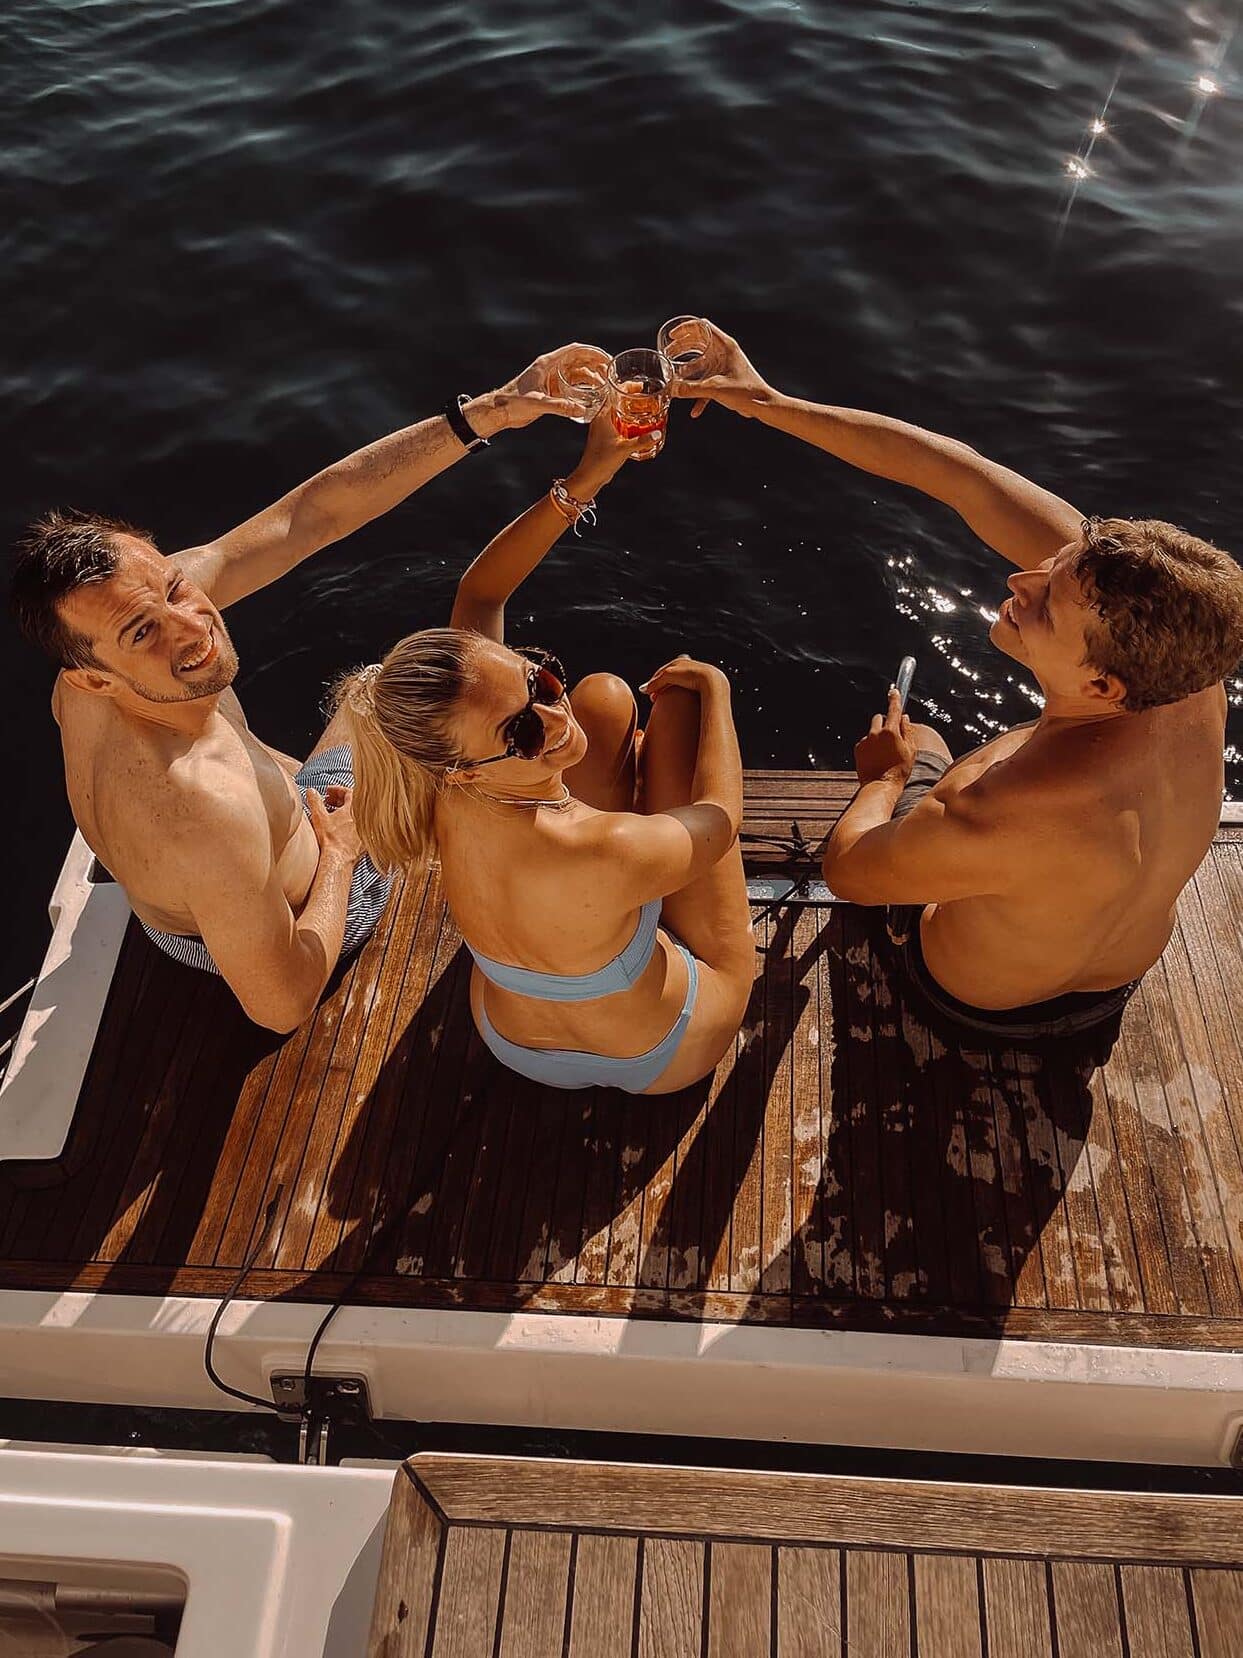 Drei Personen sitzen auf dem Deck einer Segelyacht und stoßen mit ihren Getränken an. Sie tragen Badebekleidung und genießen einen sonnigen Tag auf dem Wasser. Der Hintergrund zeigt dunkelblaues Wasser, was darauf hindeutet, dass sie sich während eines aufregenden Segeltörns auf einem See oder dem Meer befinden.